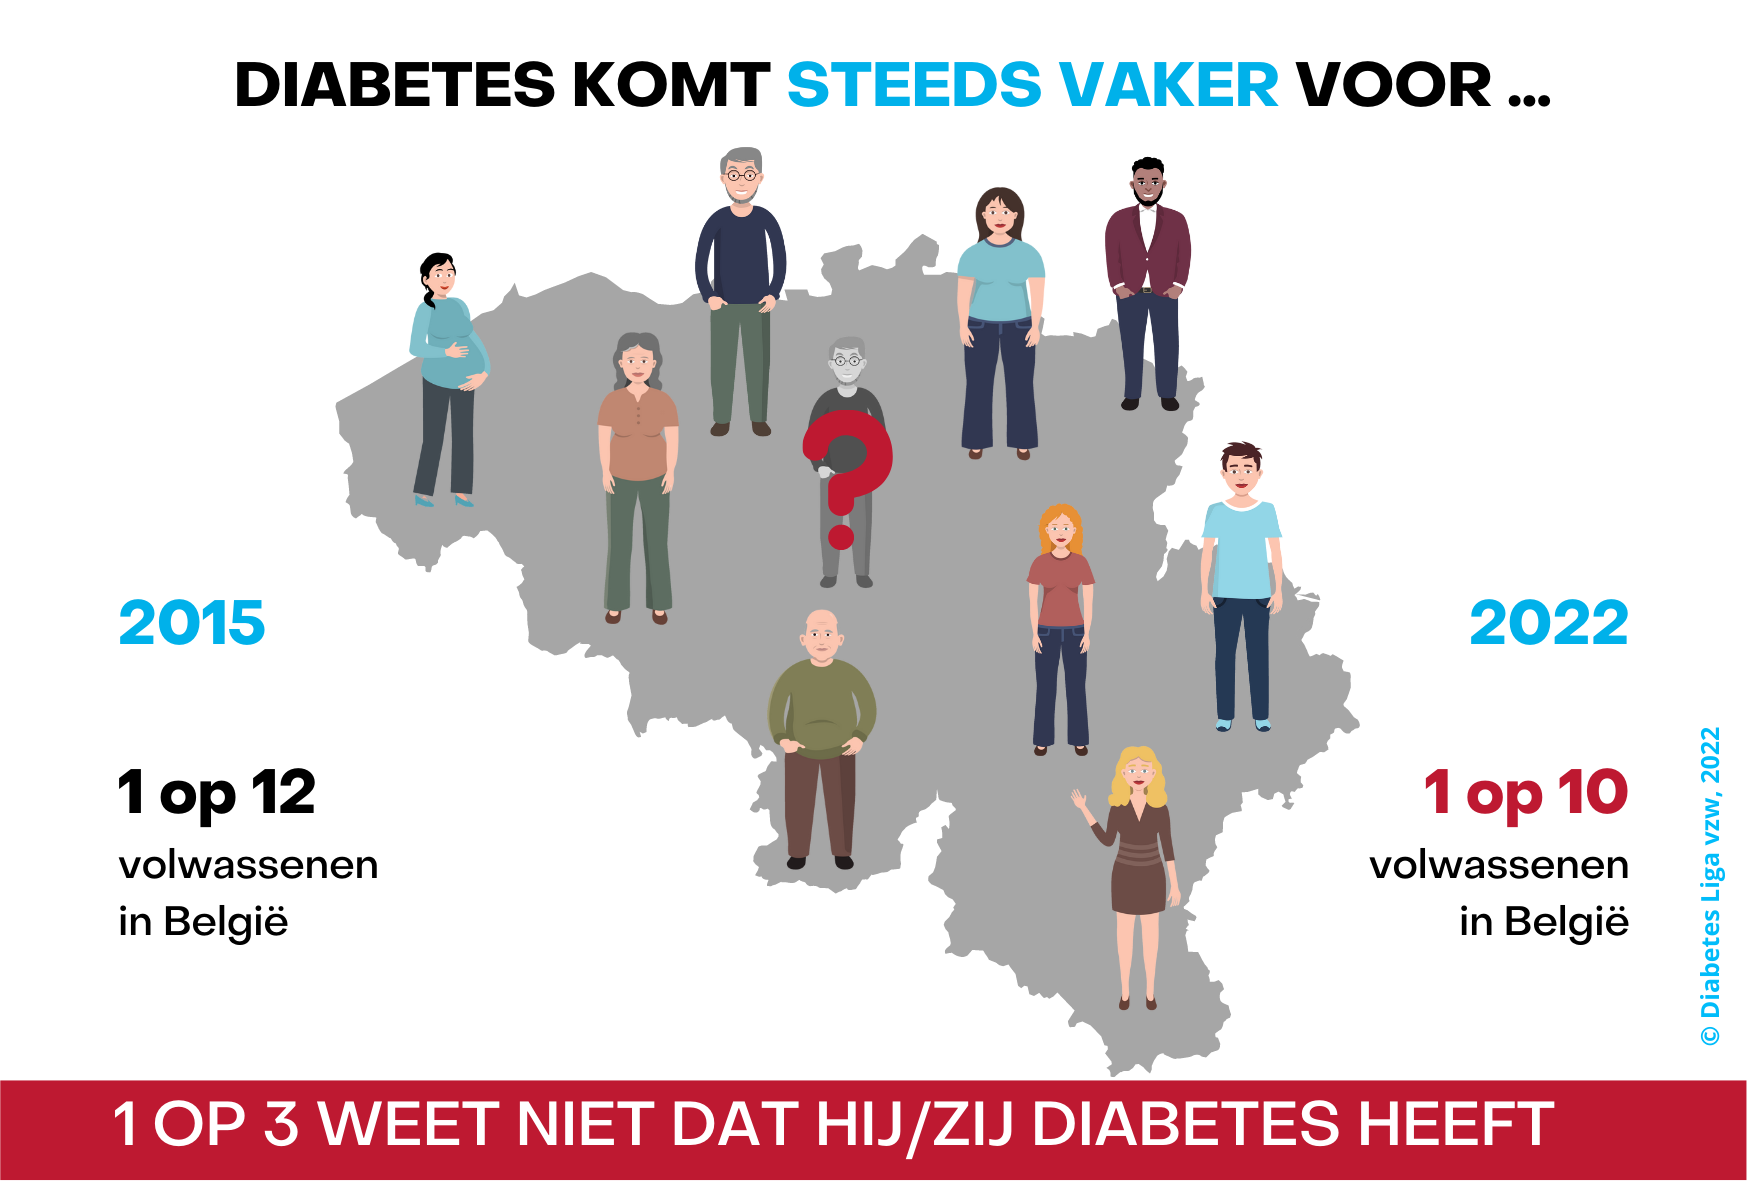 1 op 10 nieuwe visual diabetes